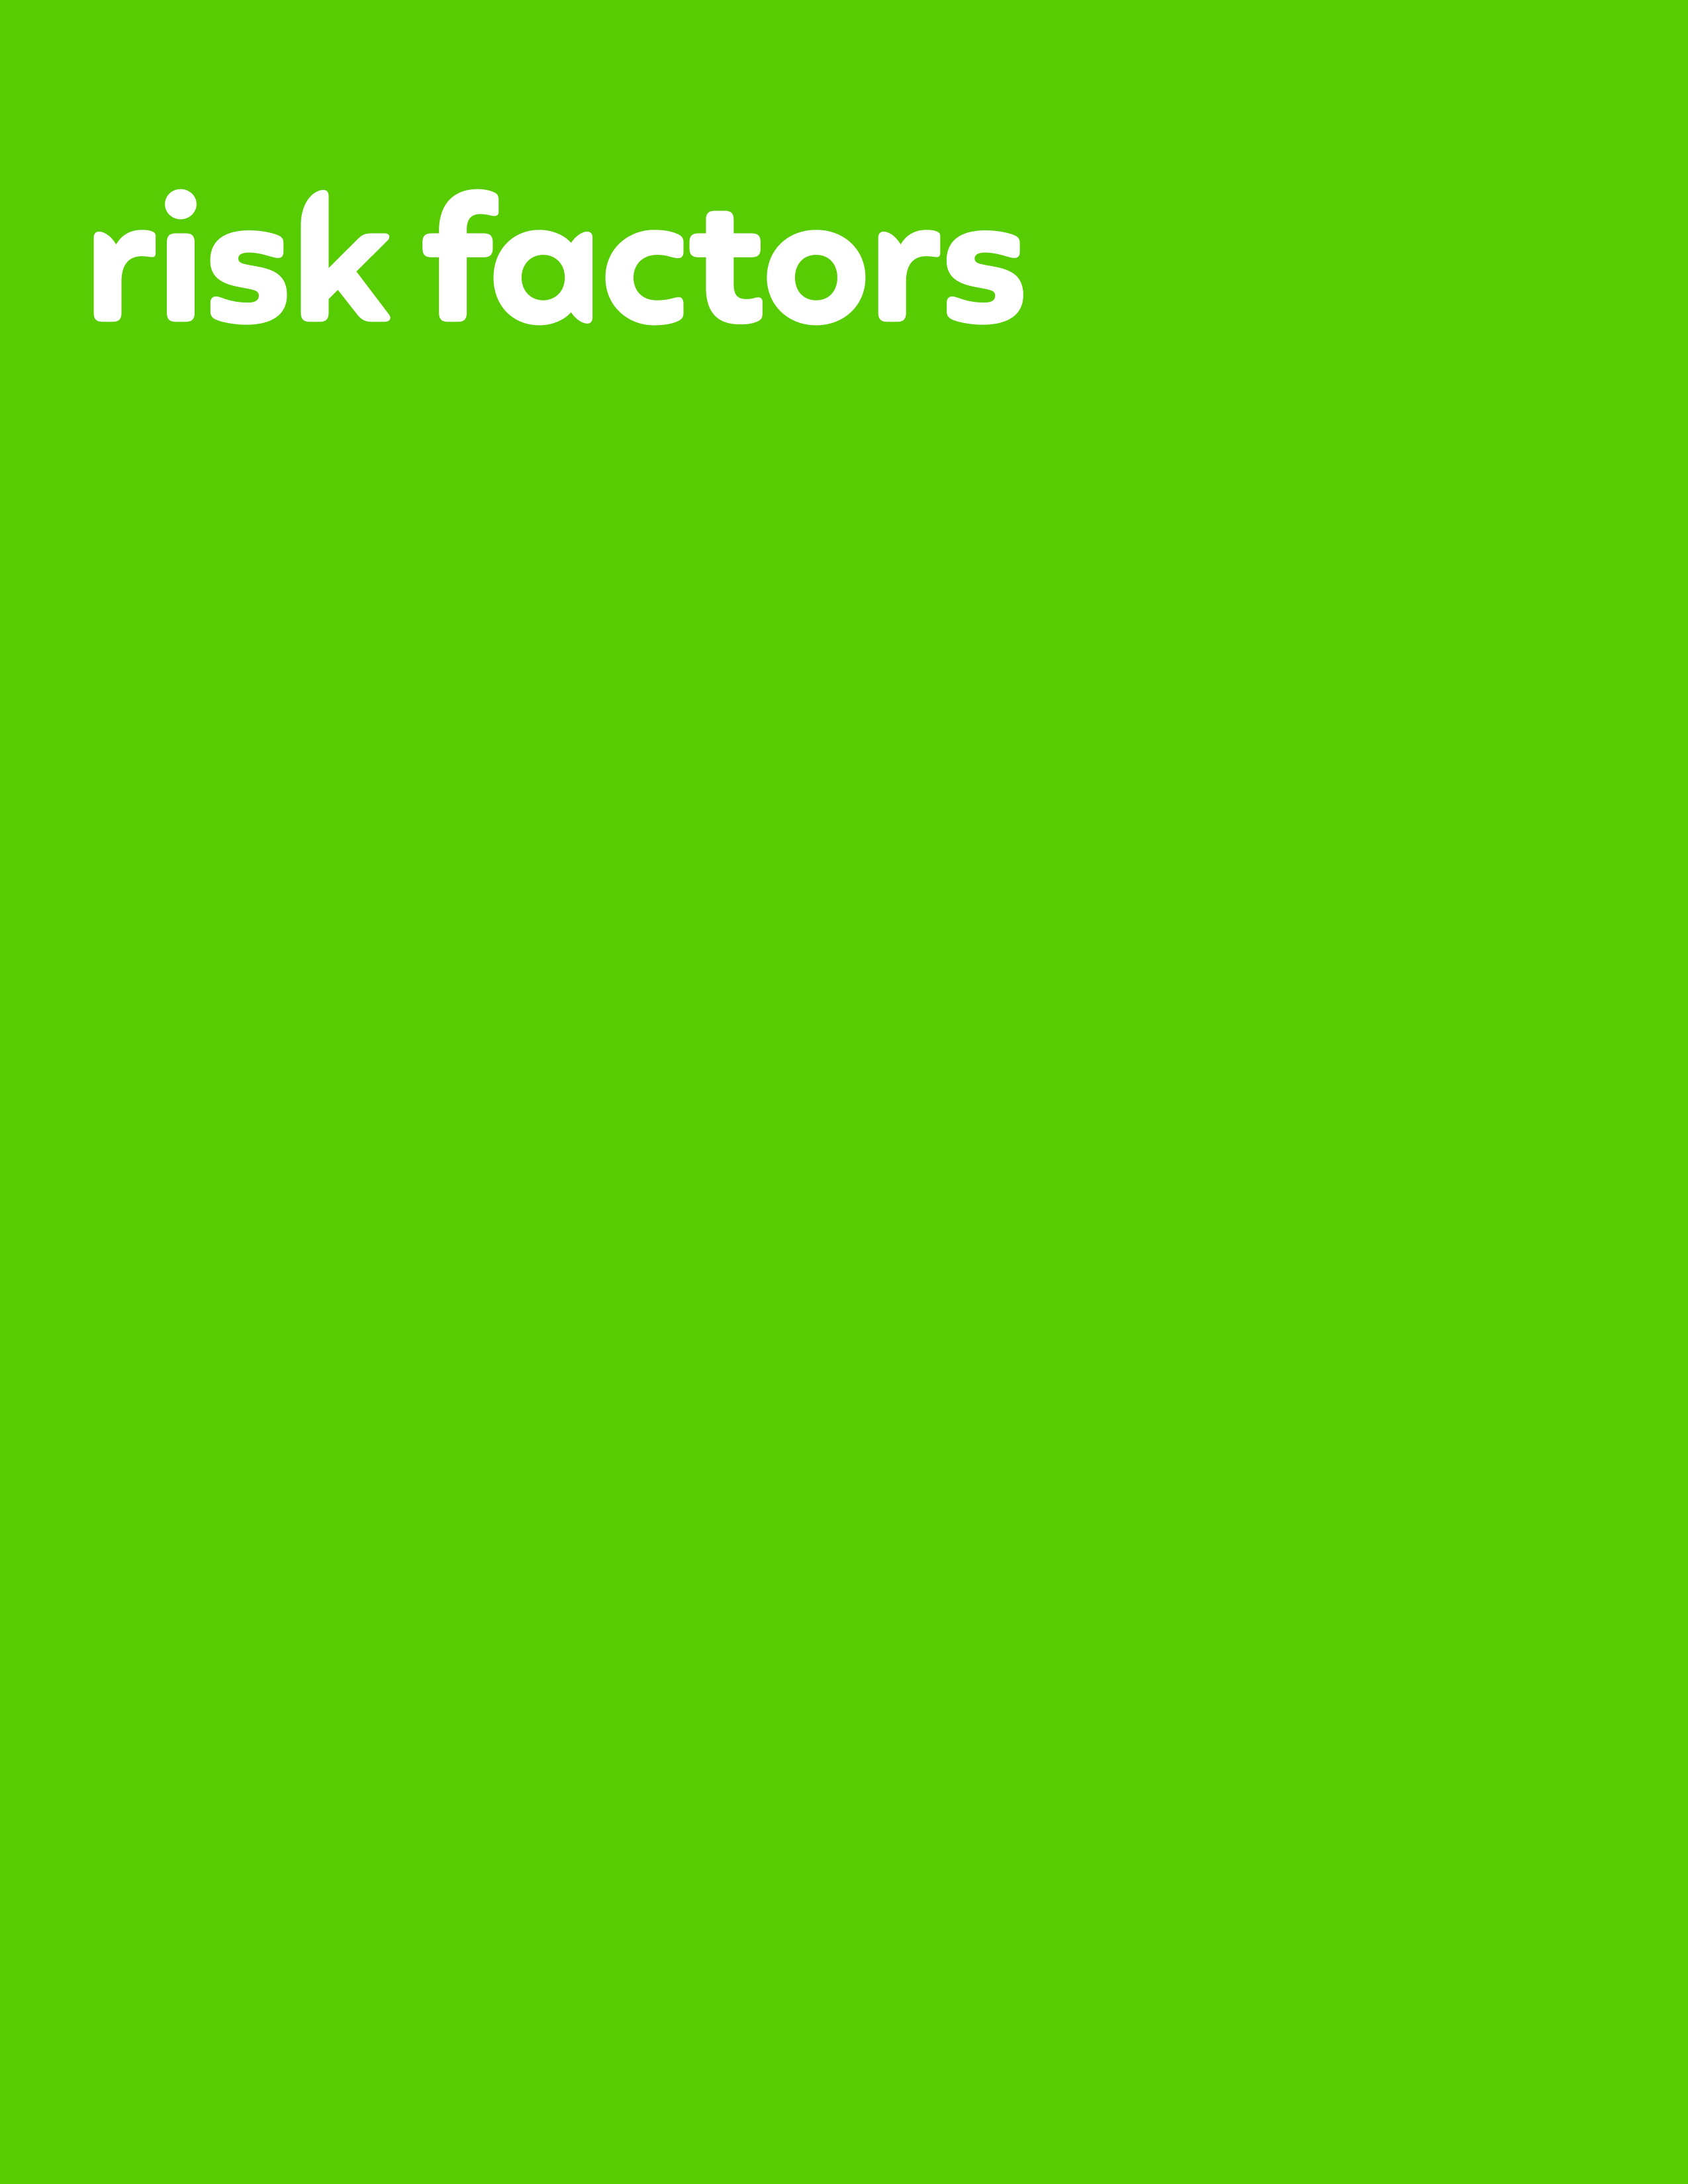 riskfactors_2ba.jpg